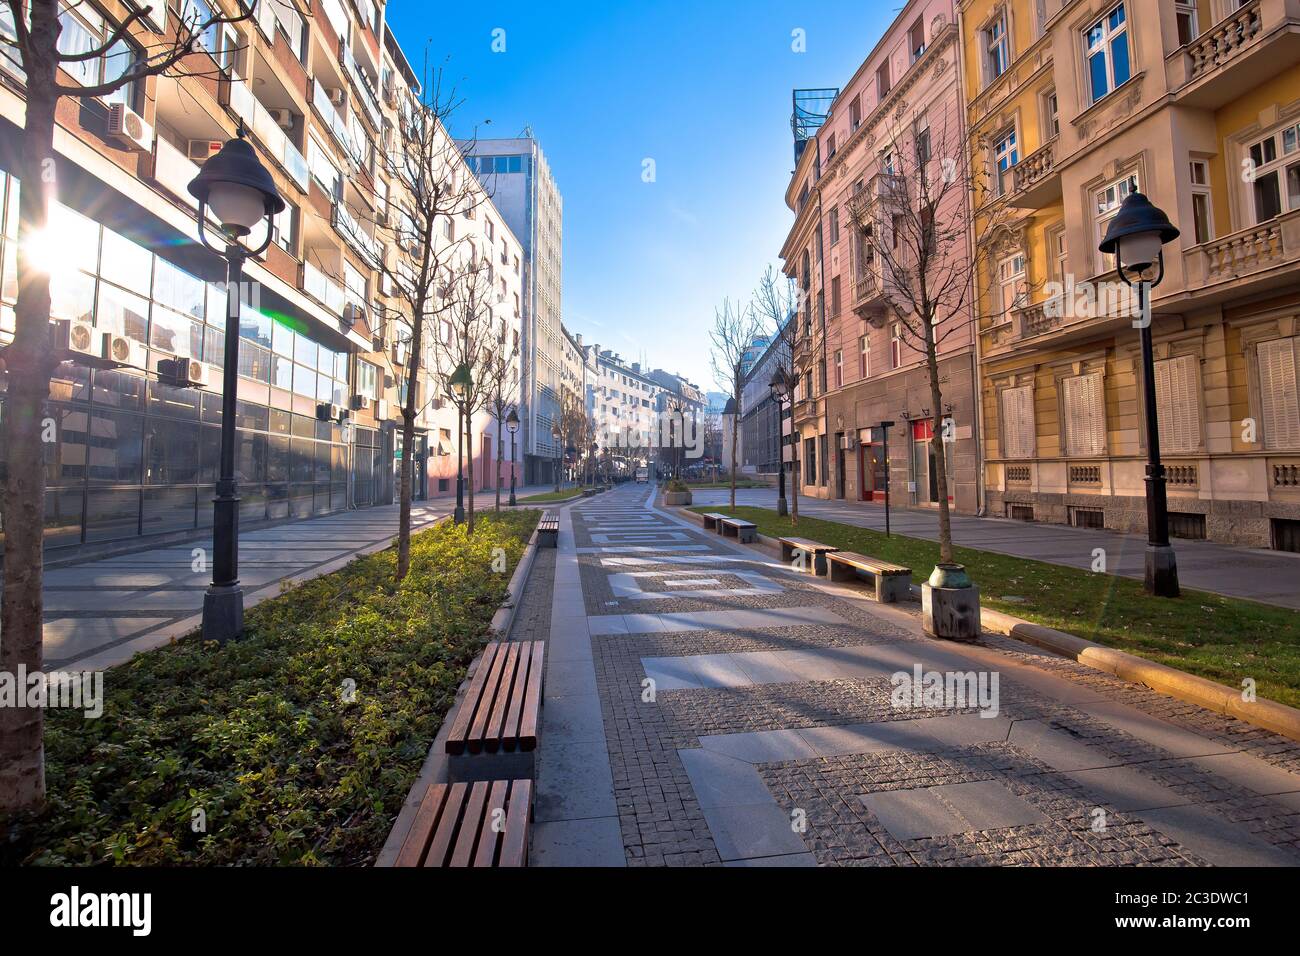 Belgrado. Le strade acciottolate della storica città di Beograd entrano nella vista Foto Stock